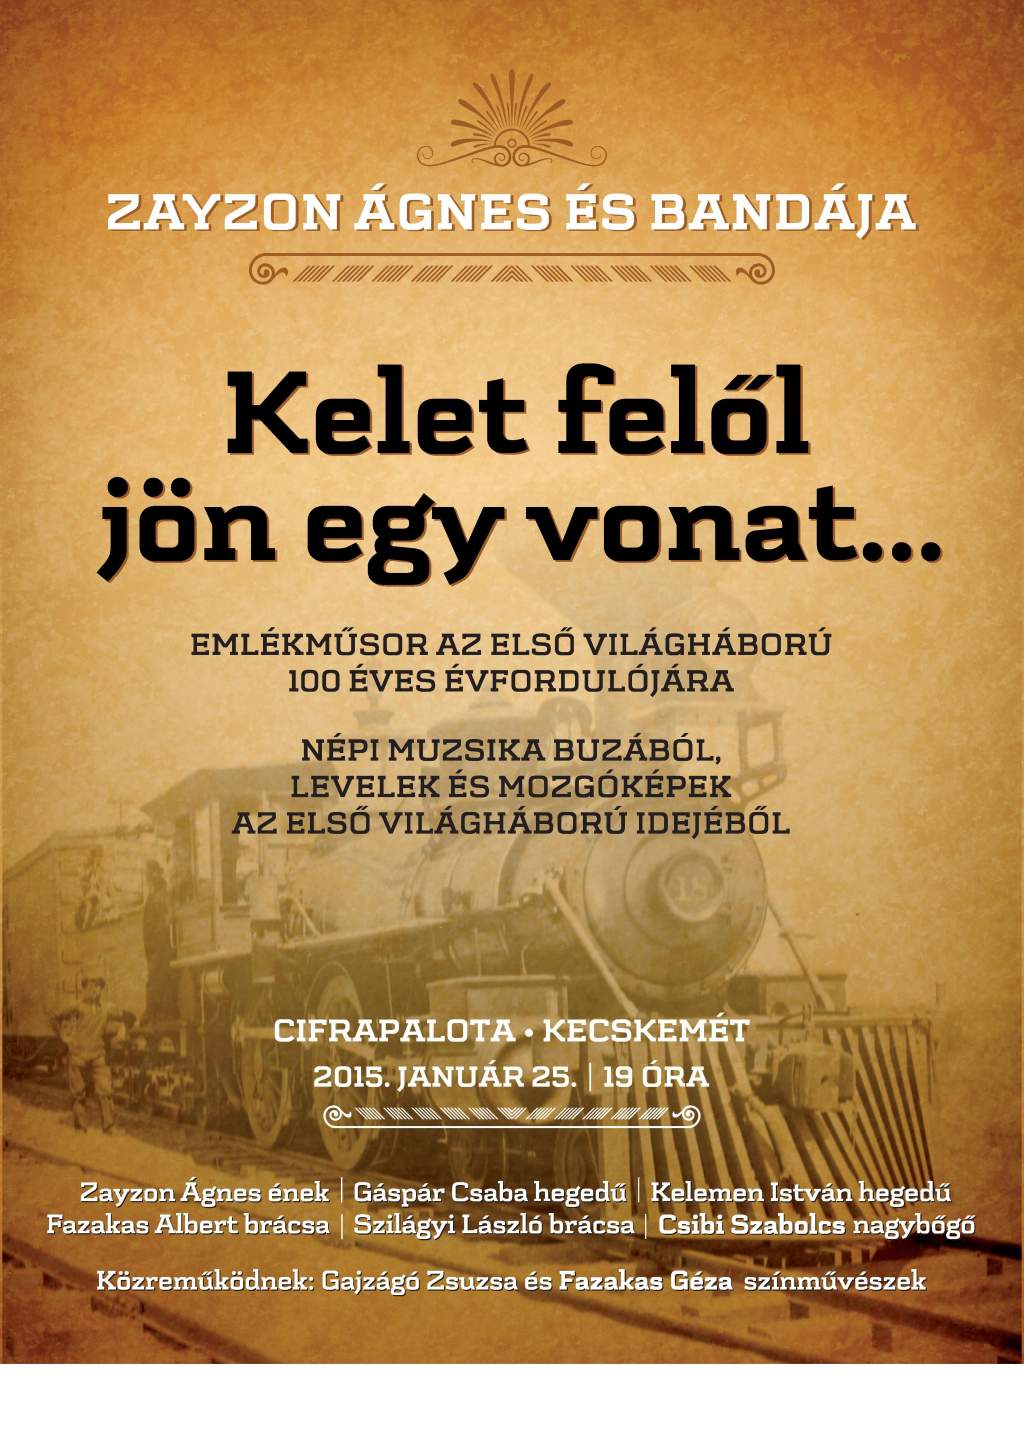 "Kelet felől jön egy vonat..." - első világháborús emlékműsor a Cifrapalotában